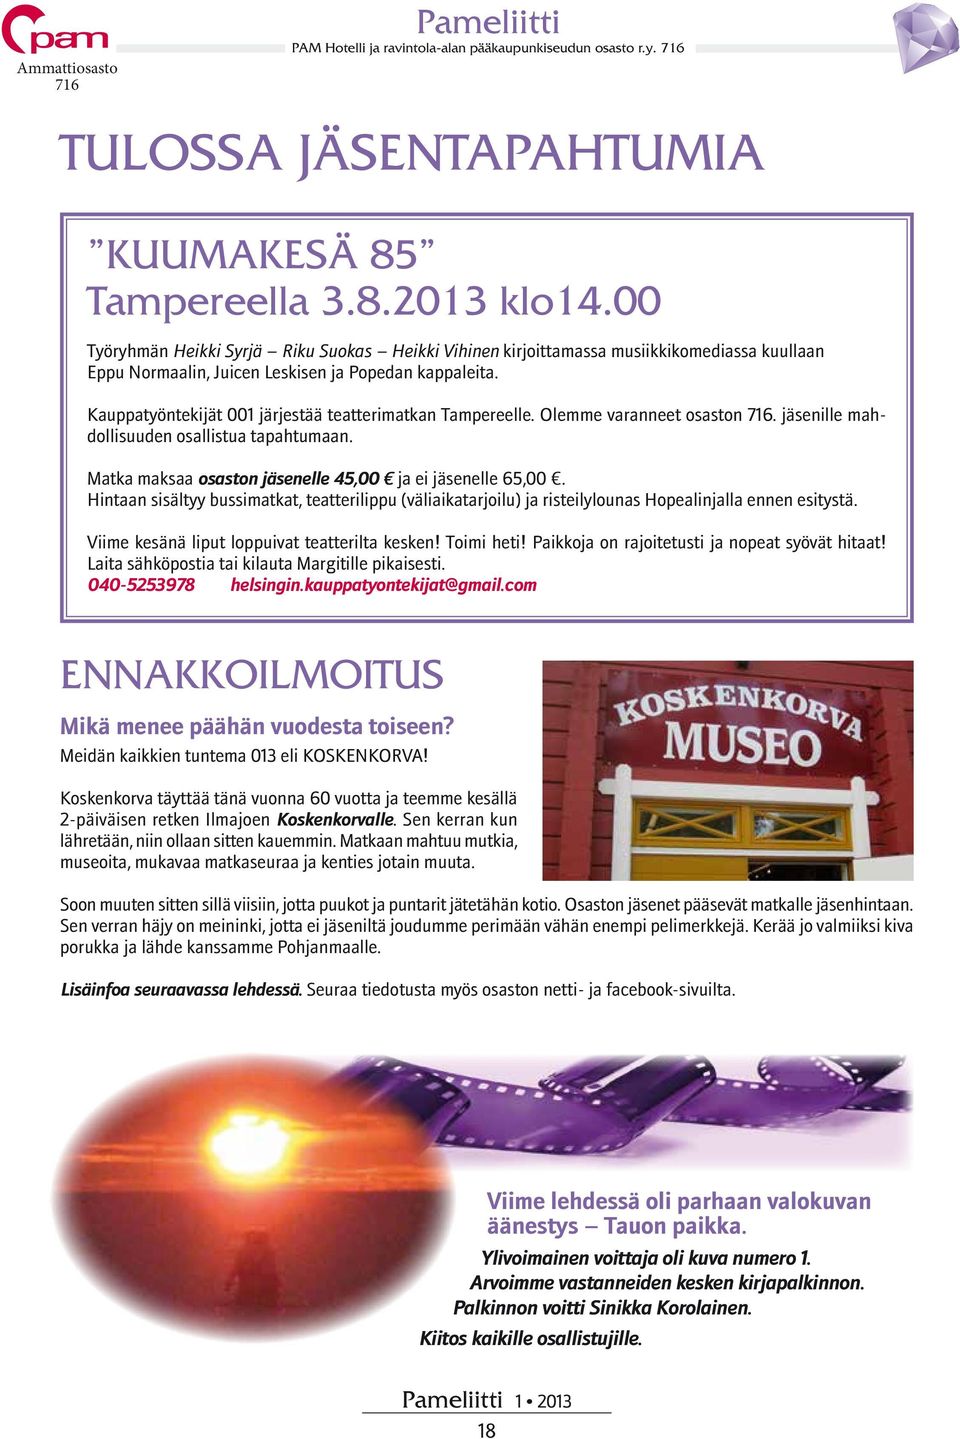 Kauppatyöntekijät 001 järjestää teatterimatkan Tampereelle. Olemme varanneet osaston. jäsenille mahdollisuuden osallistua tapahtumaan. Matka maksaa osaston jäsenelle 45,00 ja ei jäsenelle 65,00.